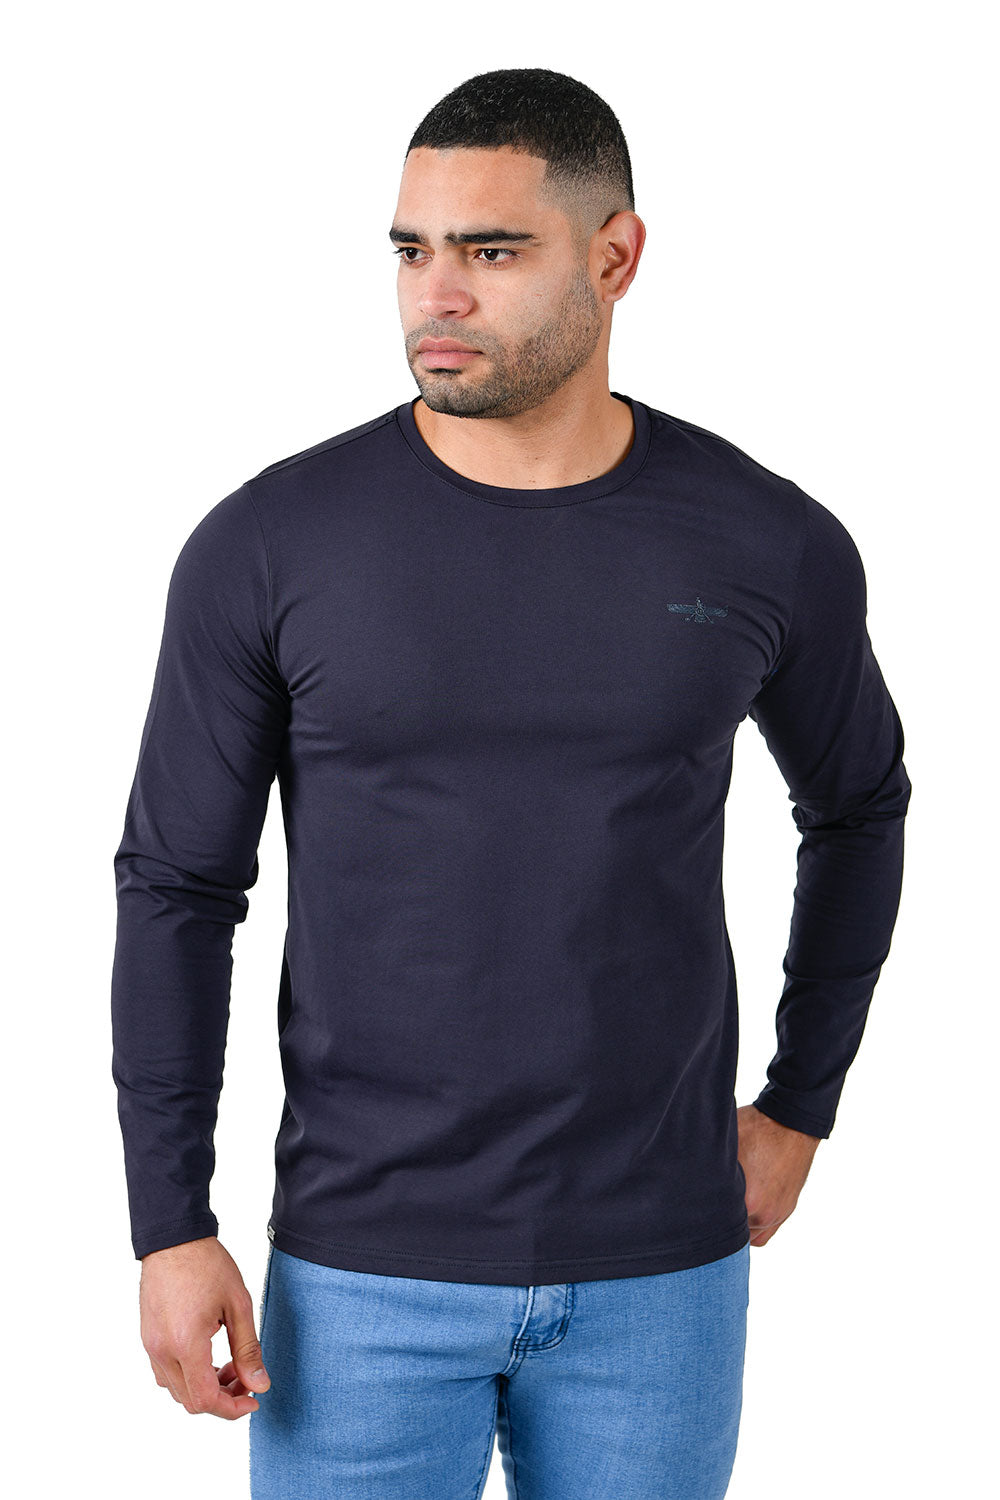 Barabas Men's Solid Color Crew Neck Sweatshirts LV127 Navy